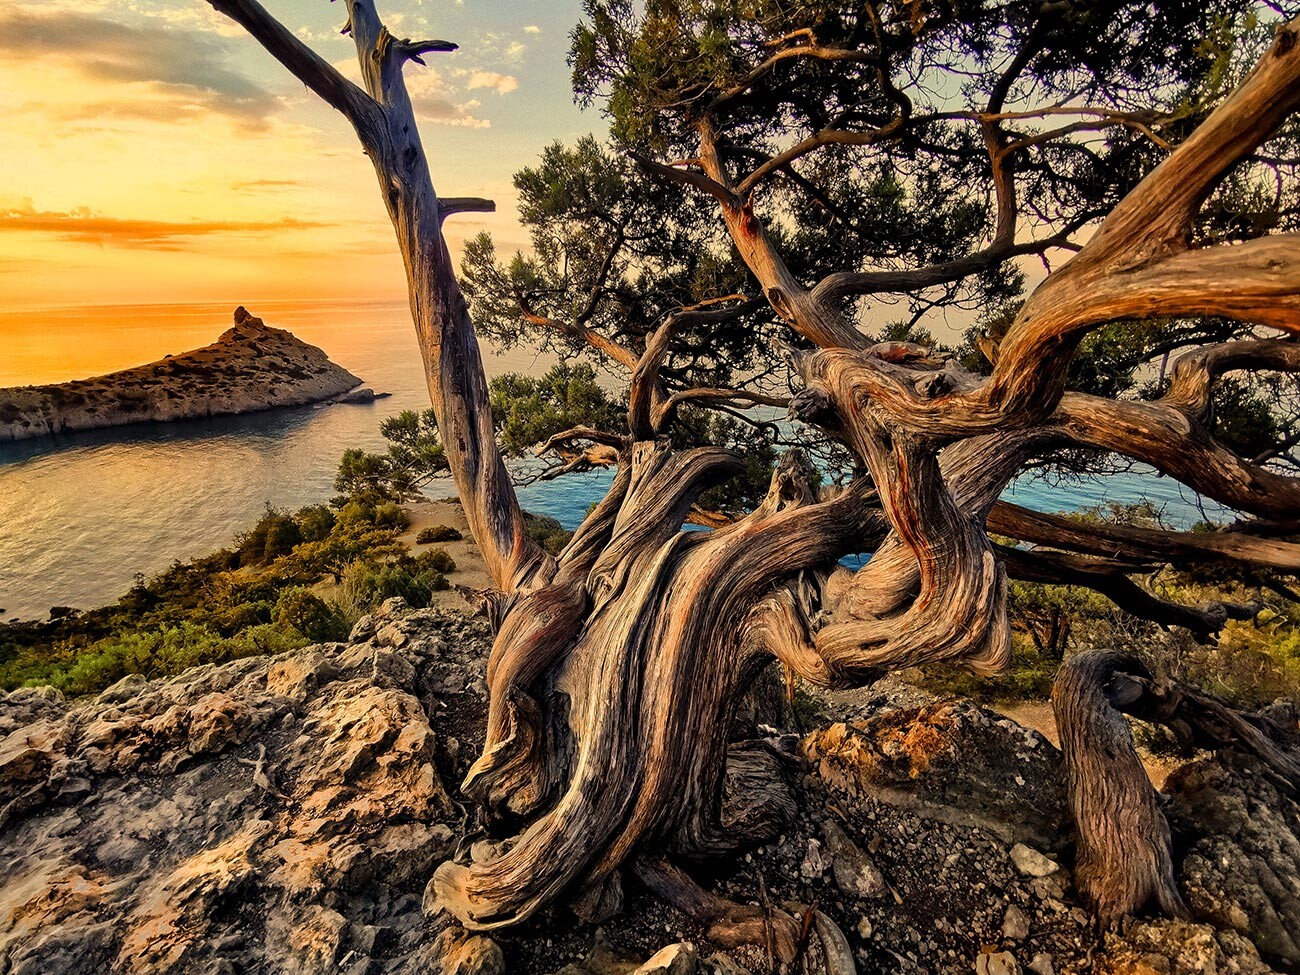 「自然は偉大な芸術家」－アレクサンドル・ラズモフ。何という木だろう！この写真は「野生の芸術（芸術写）」カテゴリーを受賞した